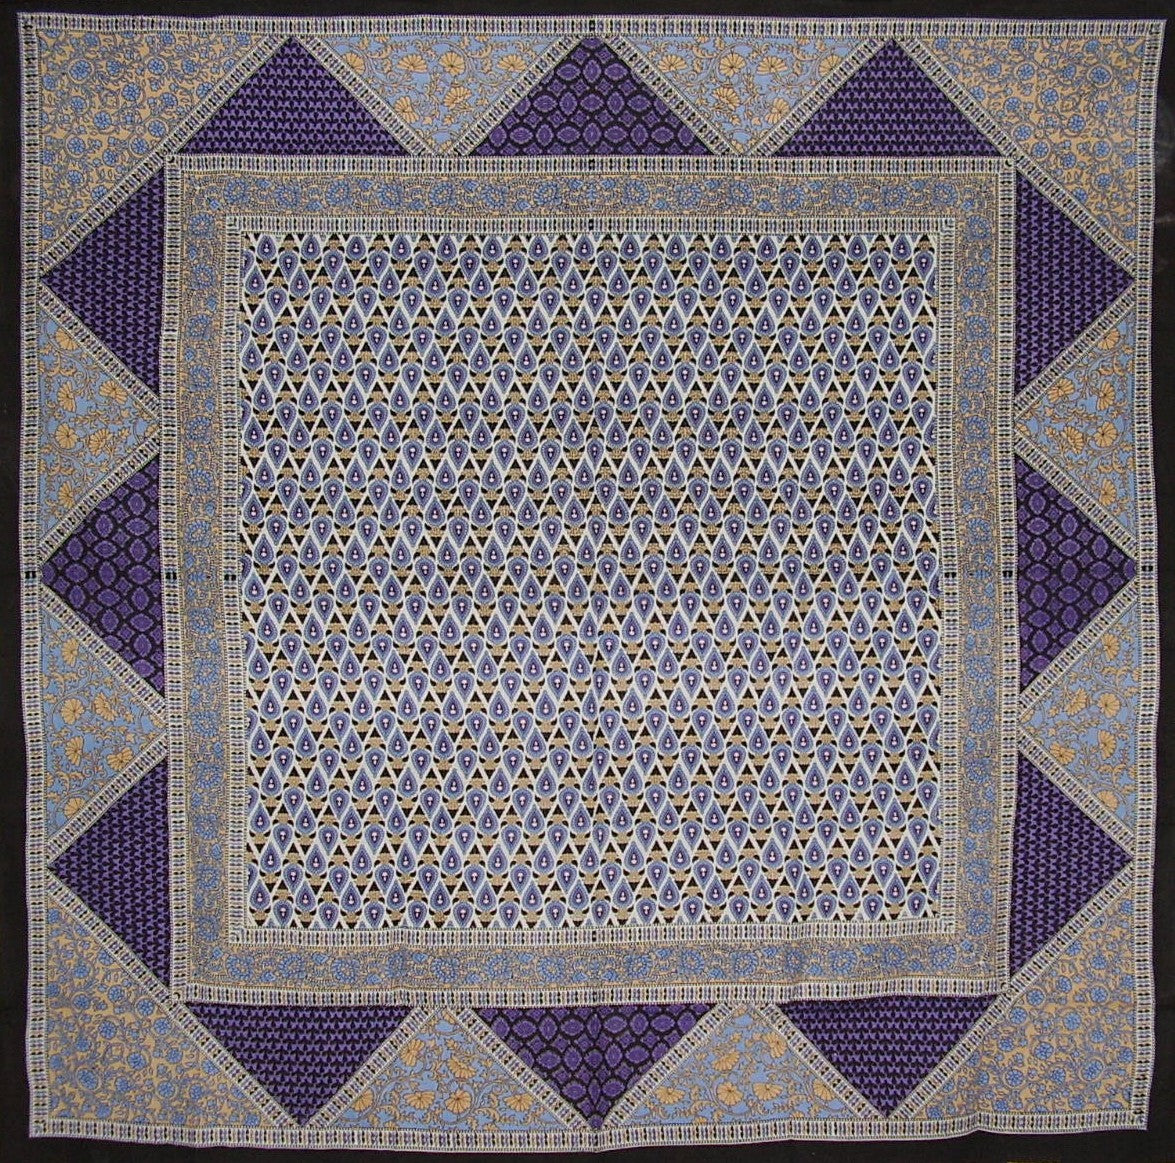 几何花卉方形棉质桌布 70" x 70" 紫色